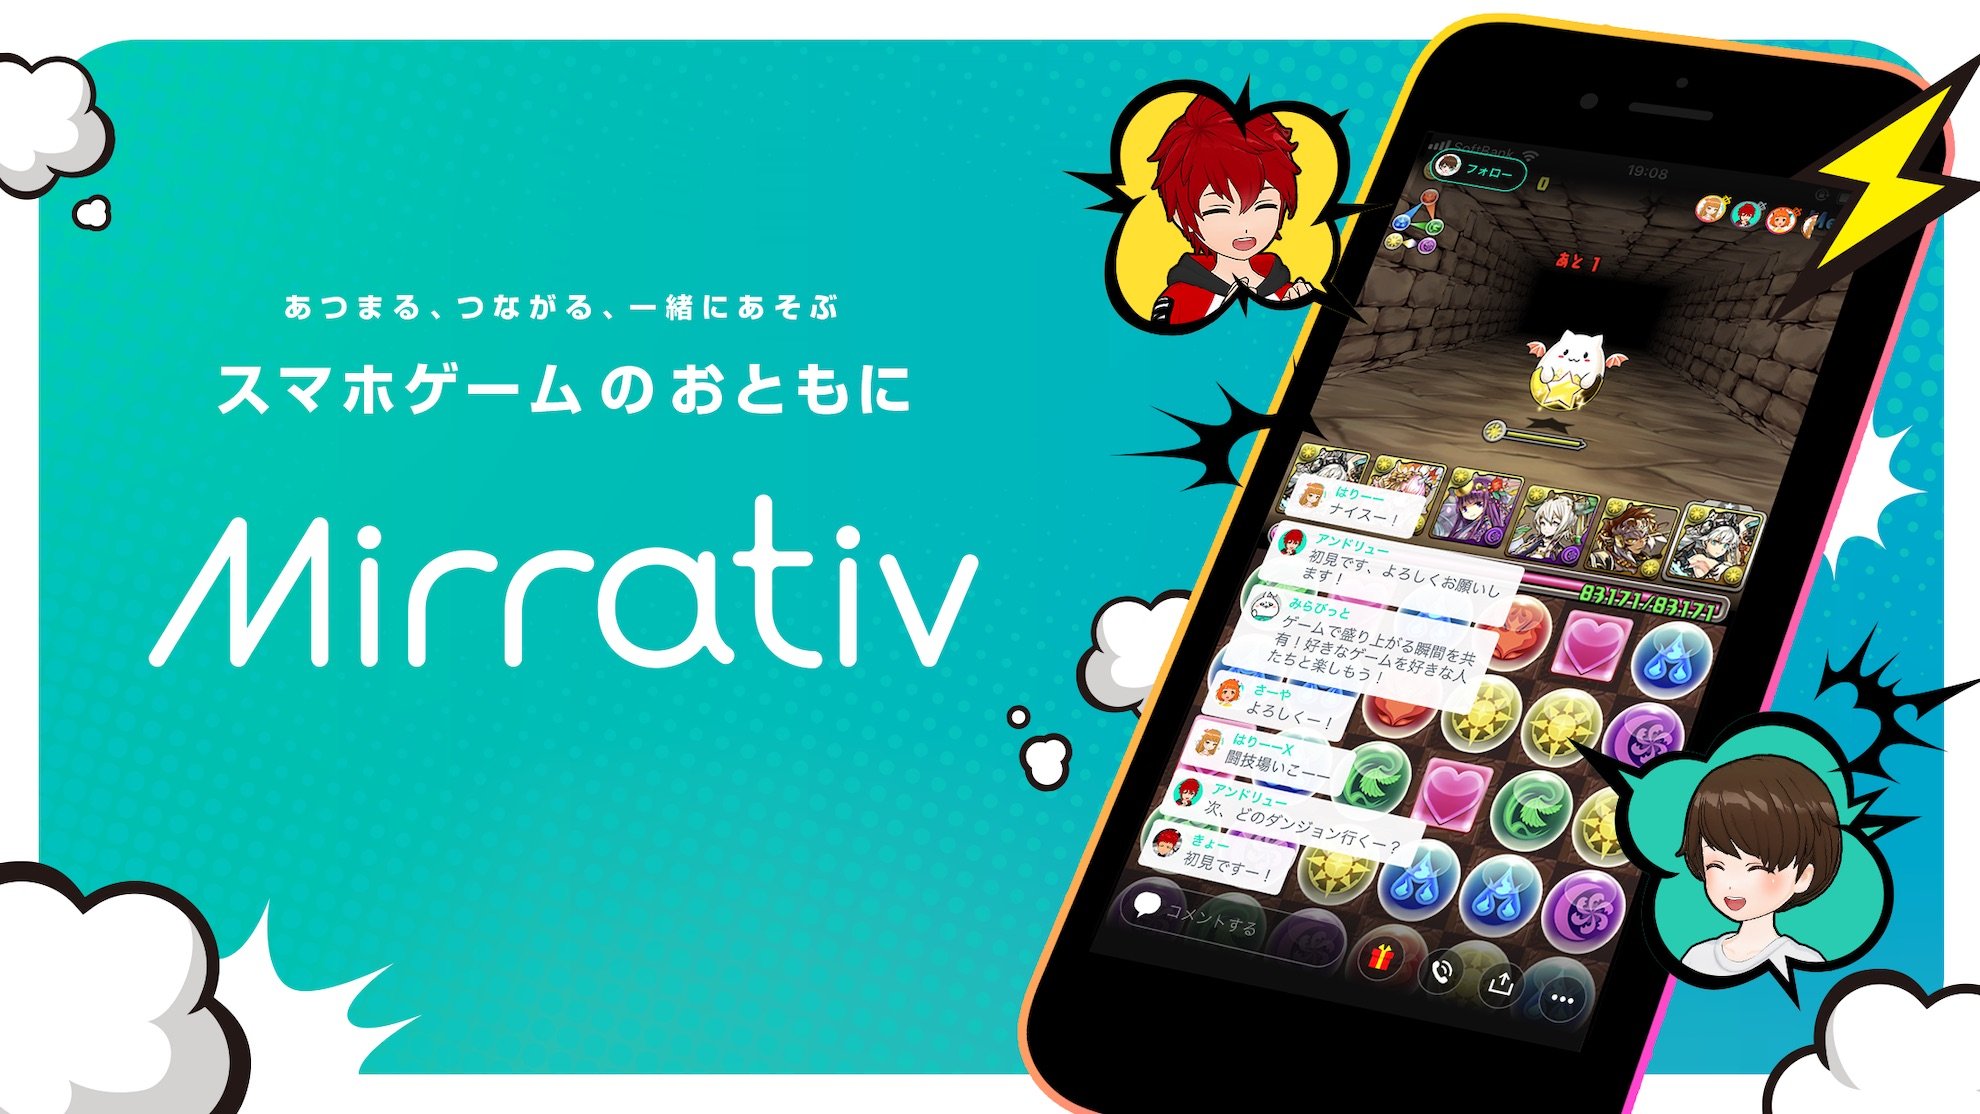 ミラティブが運営するゲーム配信サービス「Mirrativ」